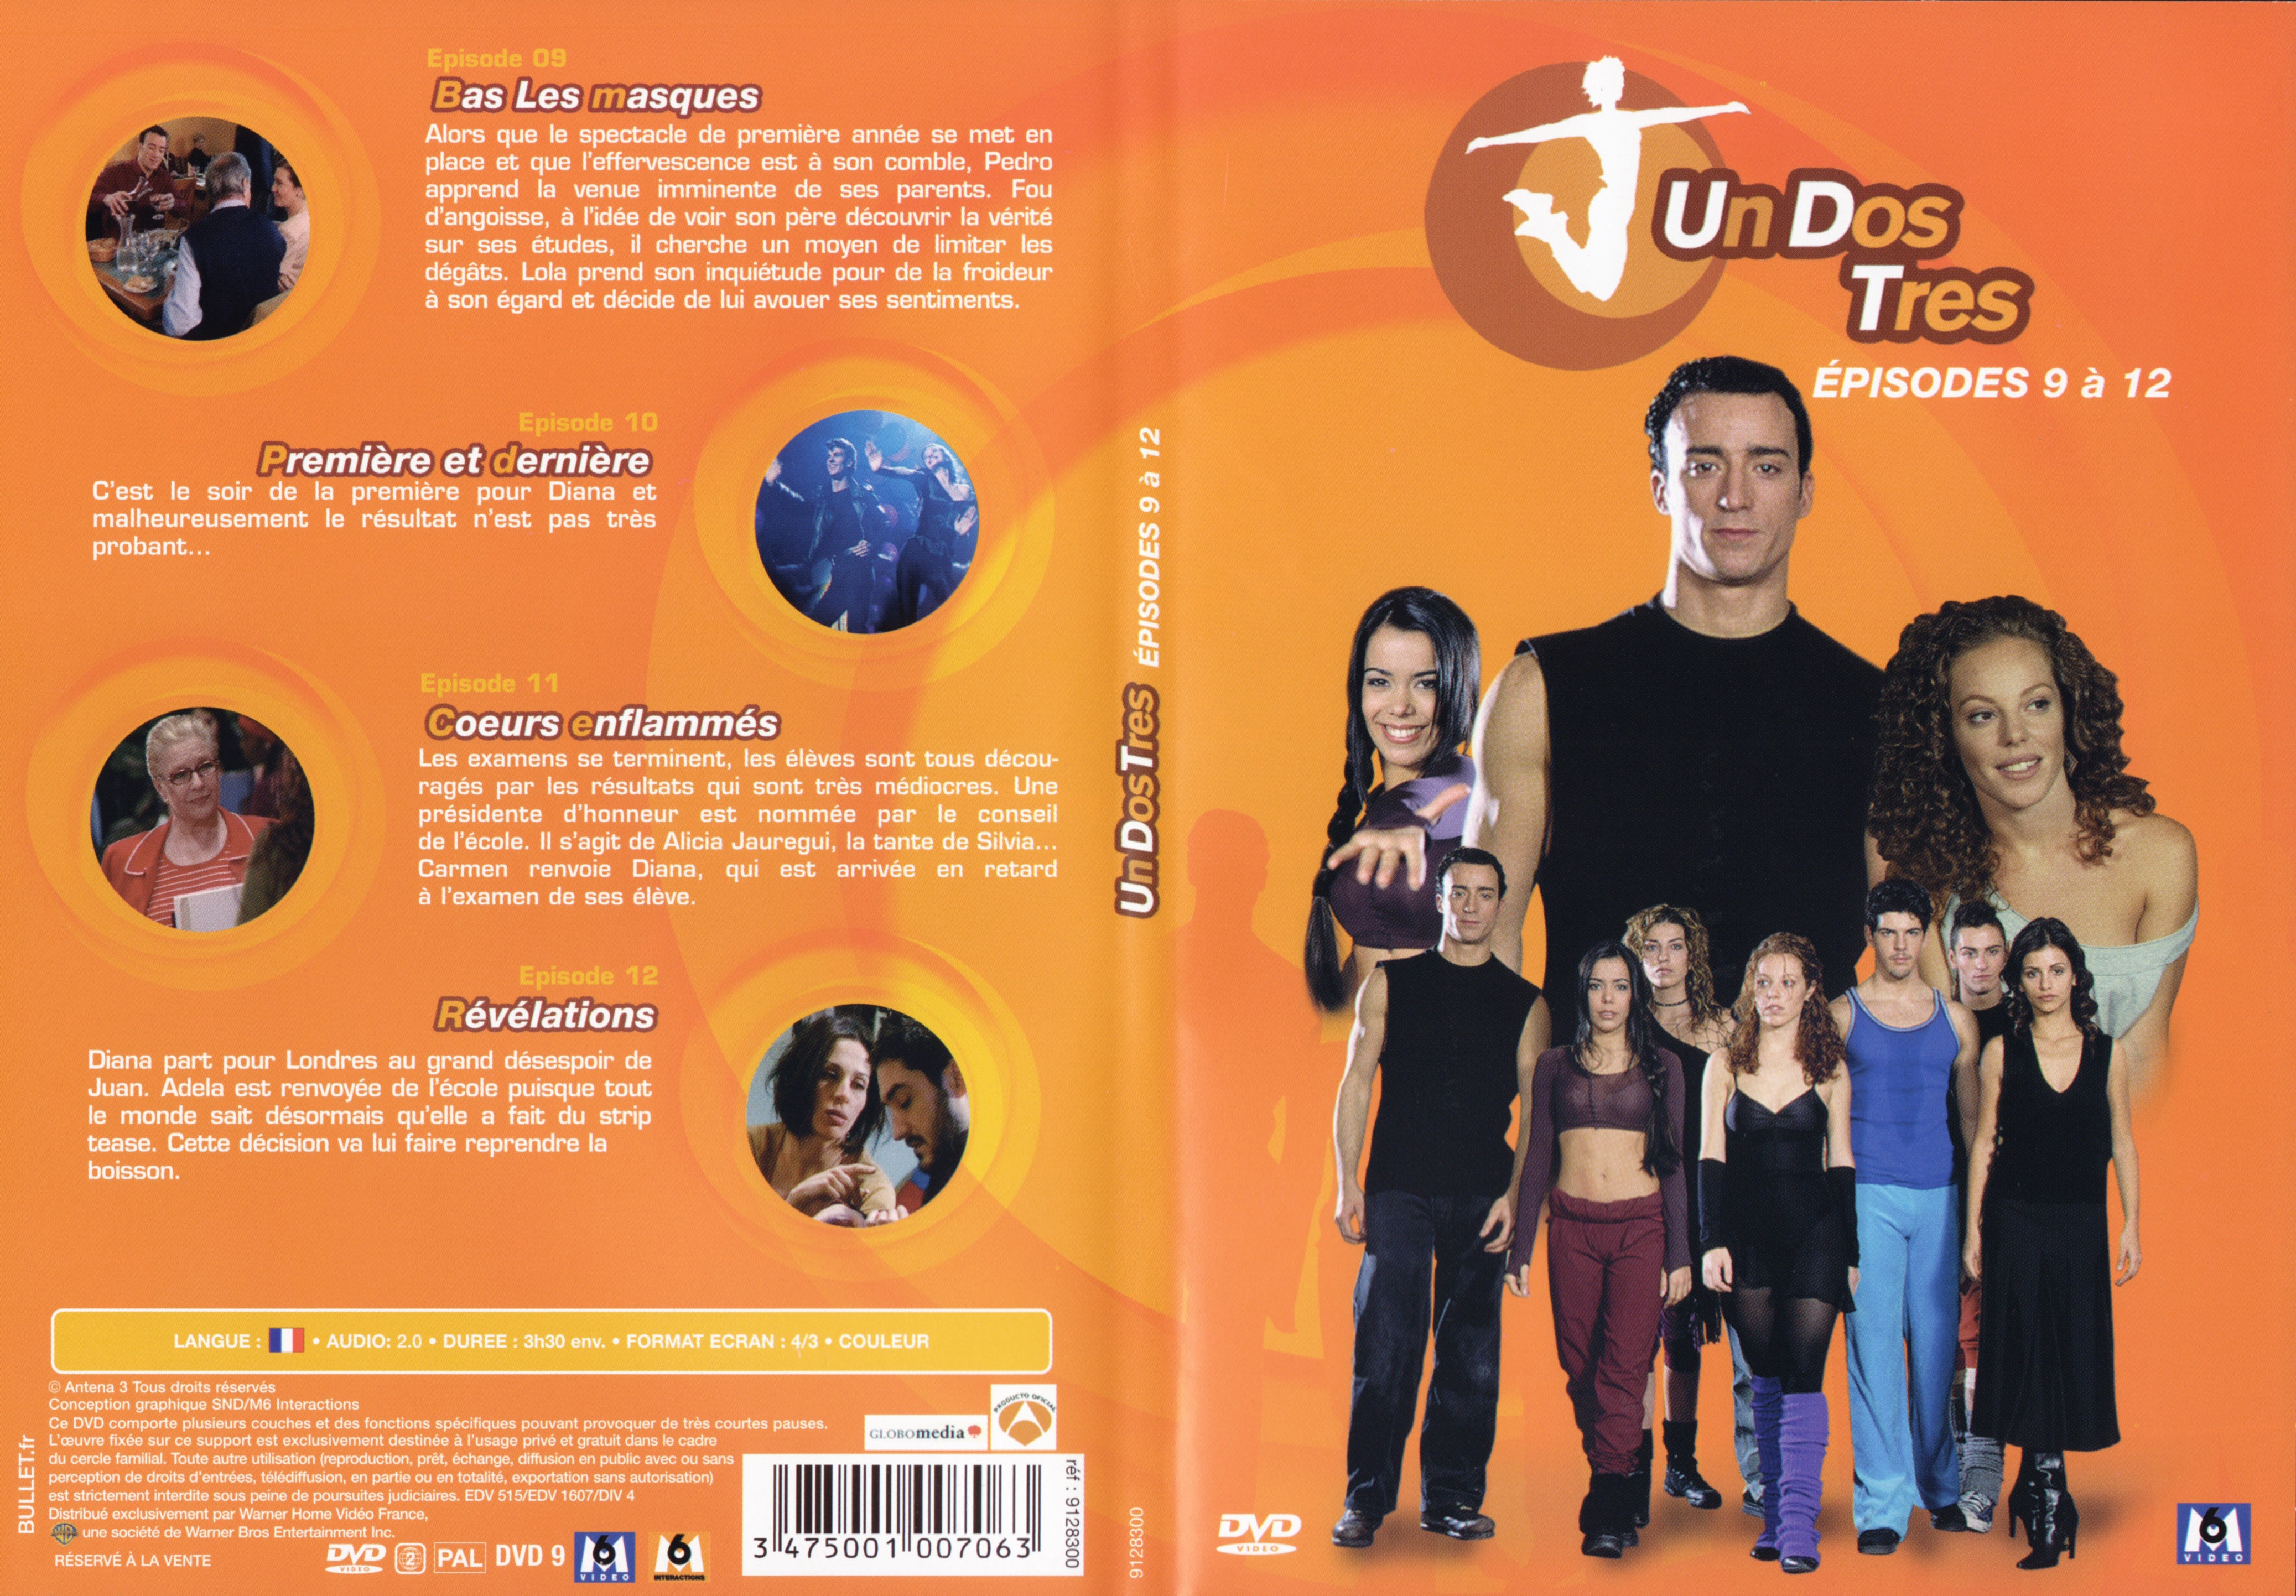 Jaquette DVD Un dos tres Saison 1 DVD 3